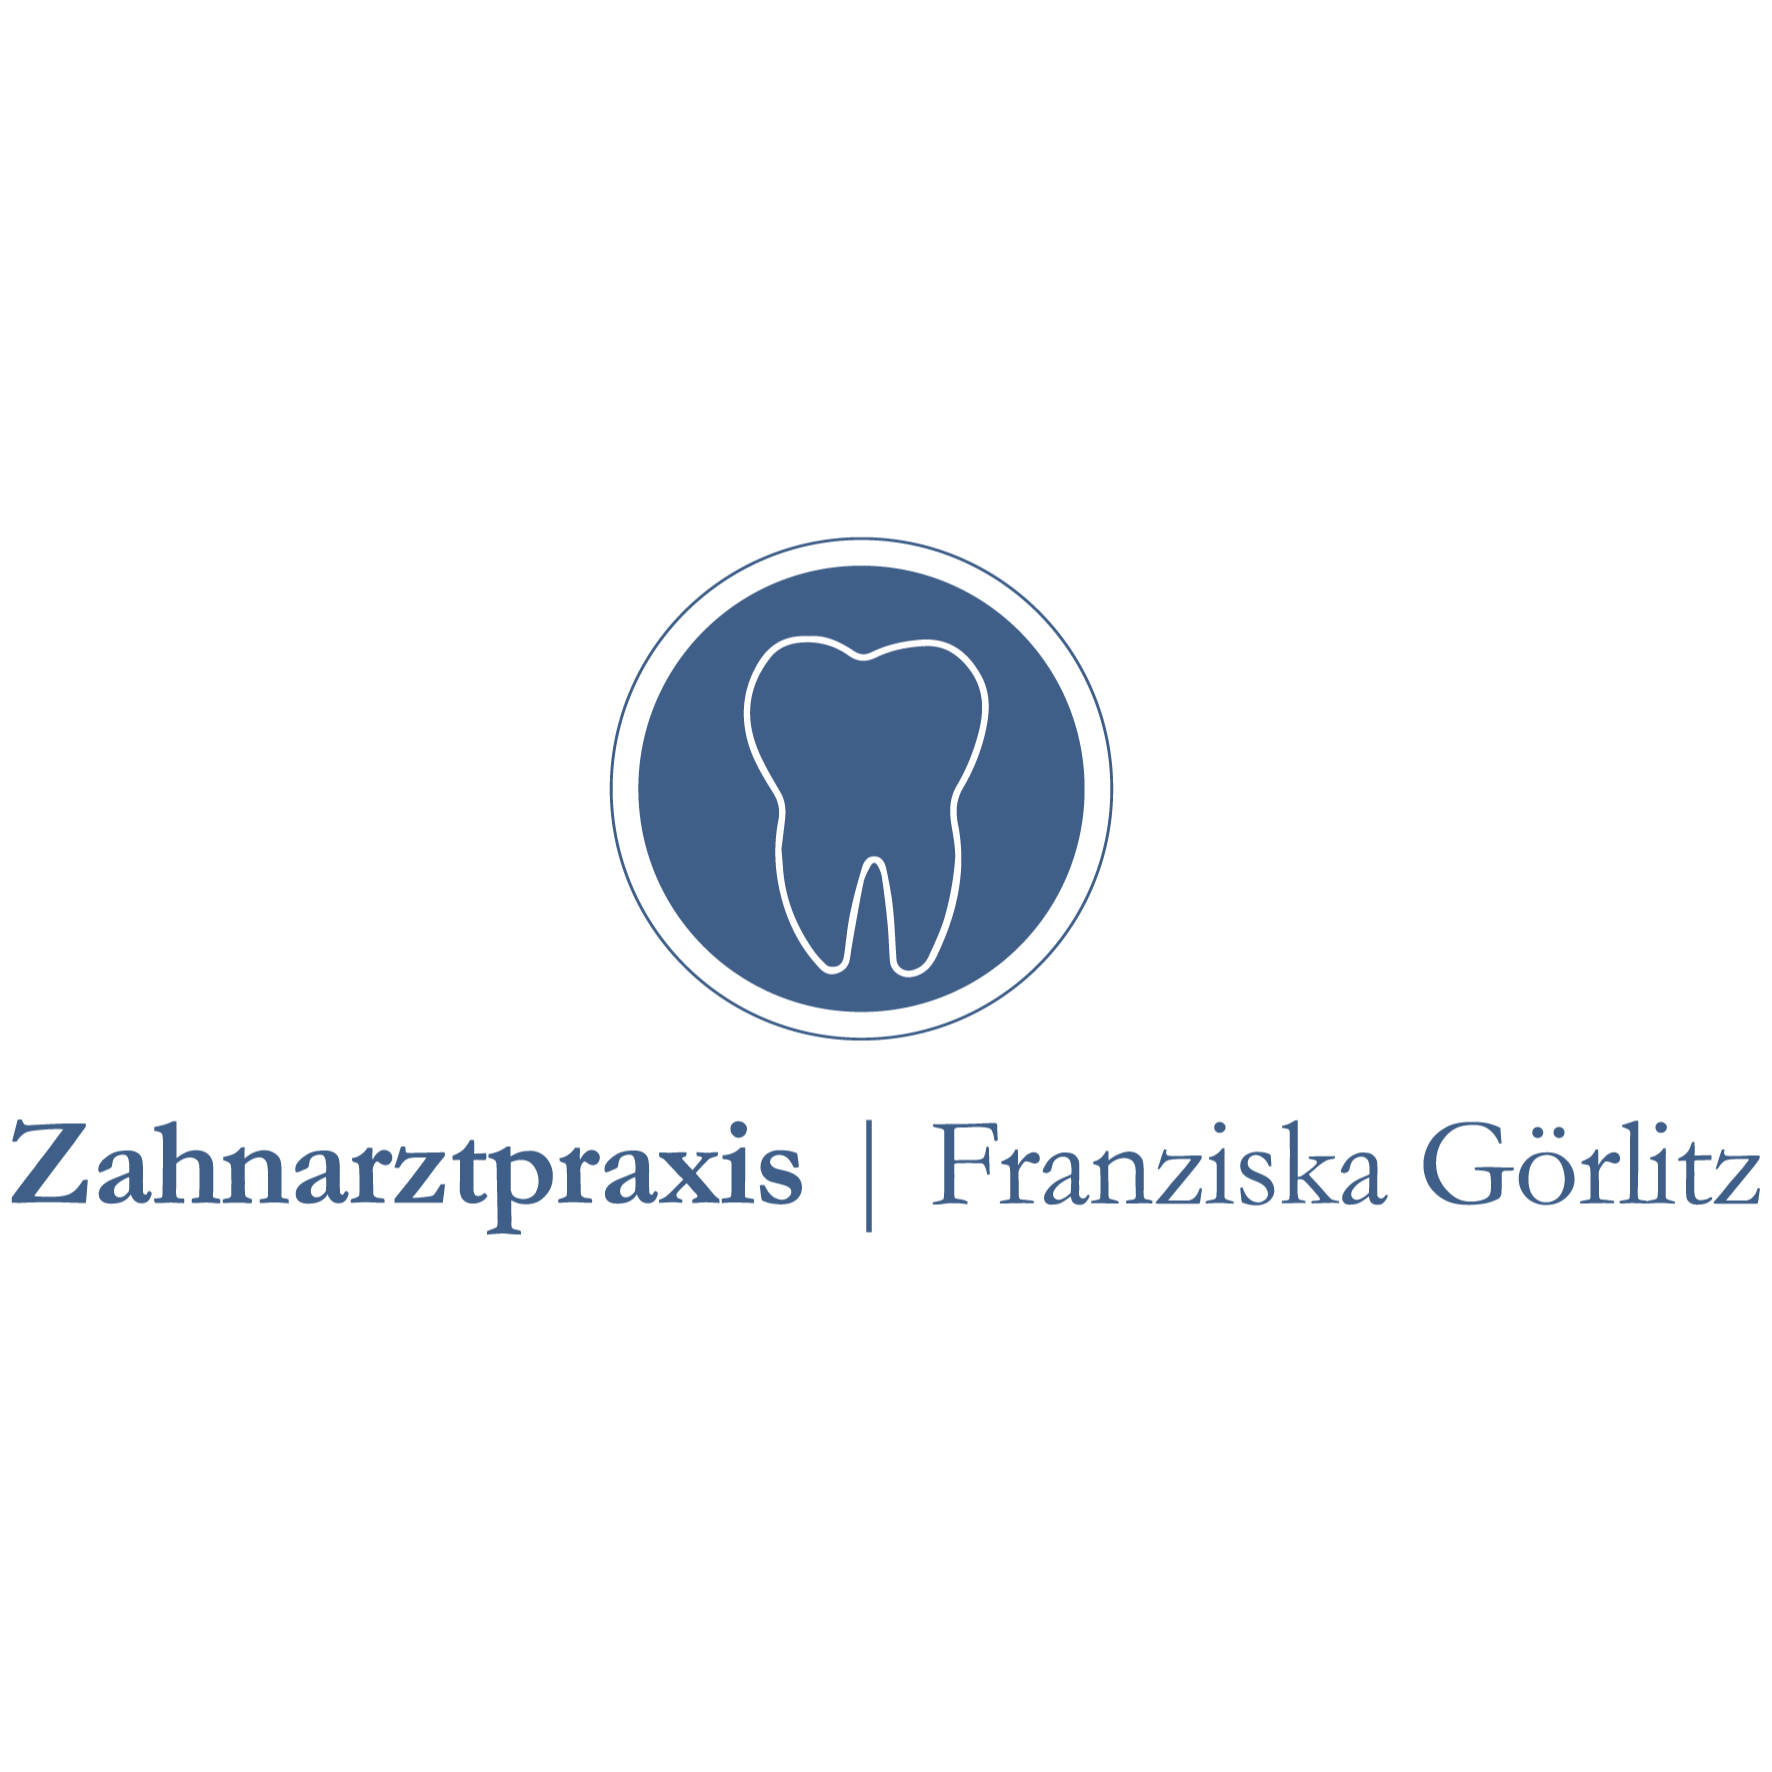 Zahnarztpraxis Franziska Görlitz in Jessen an der Elster - Logo